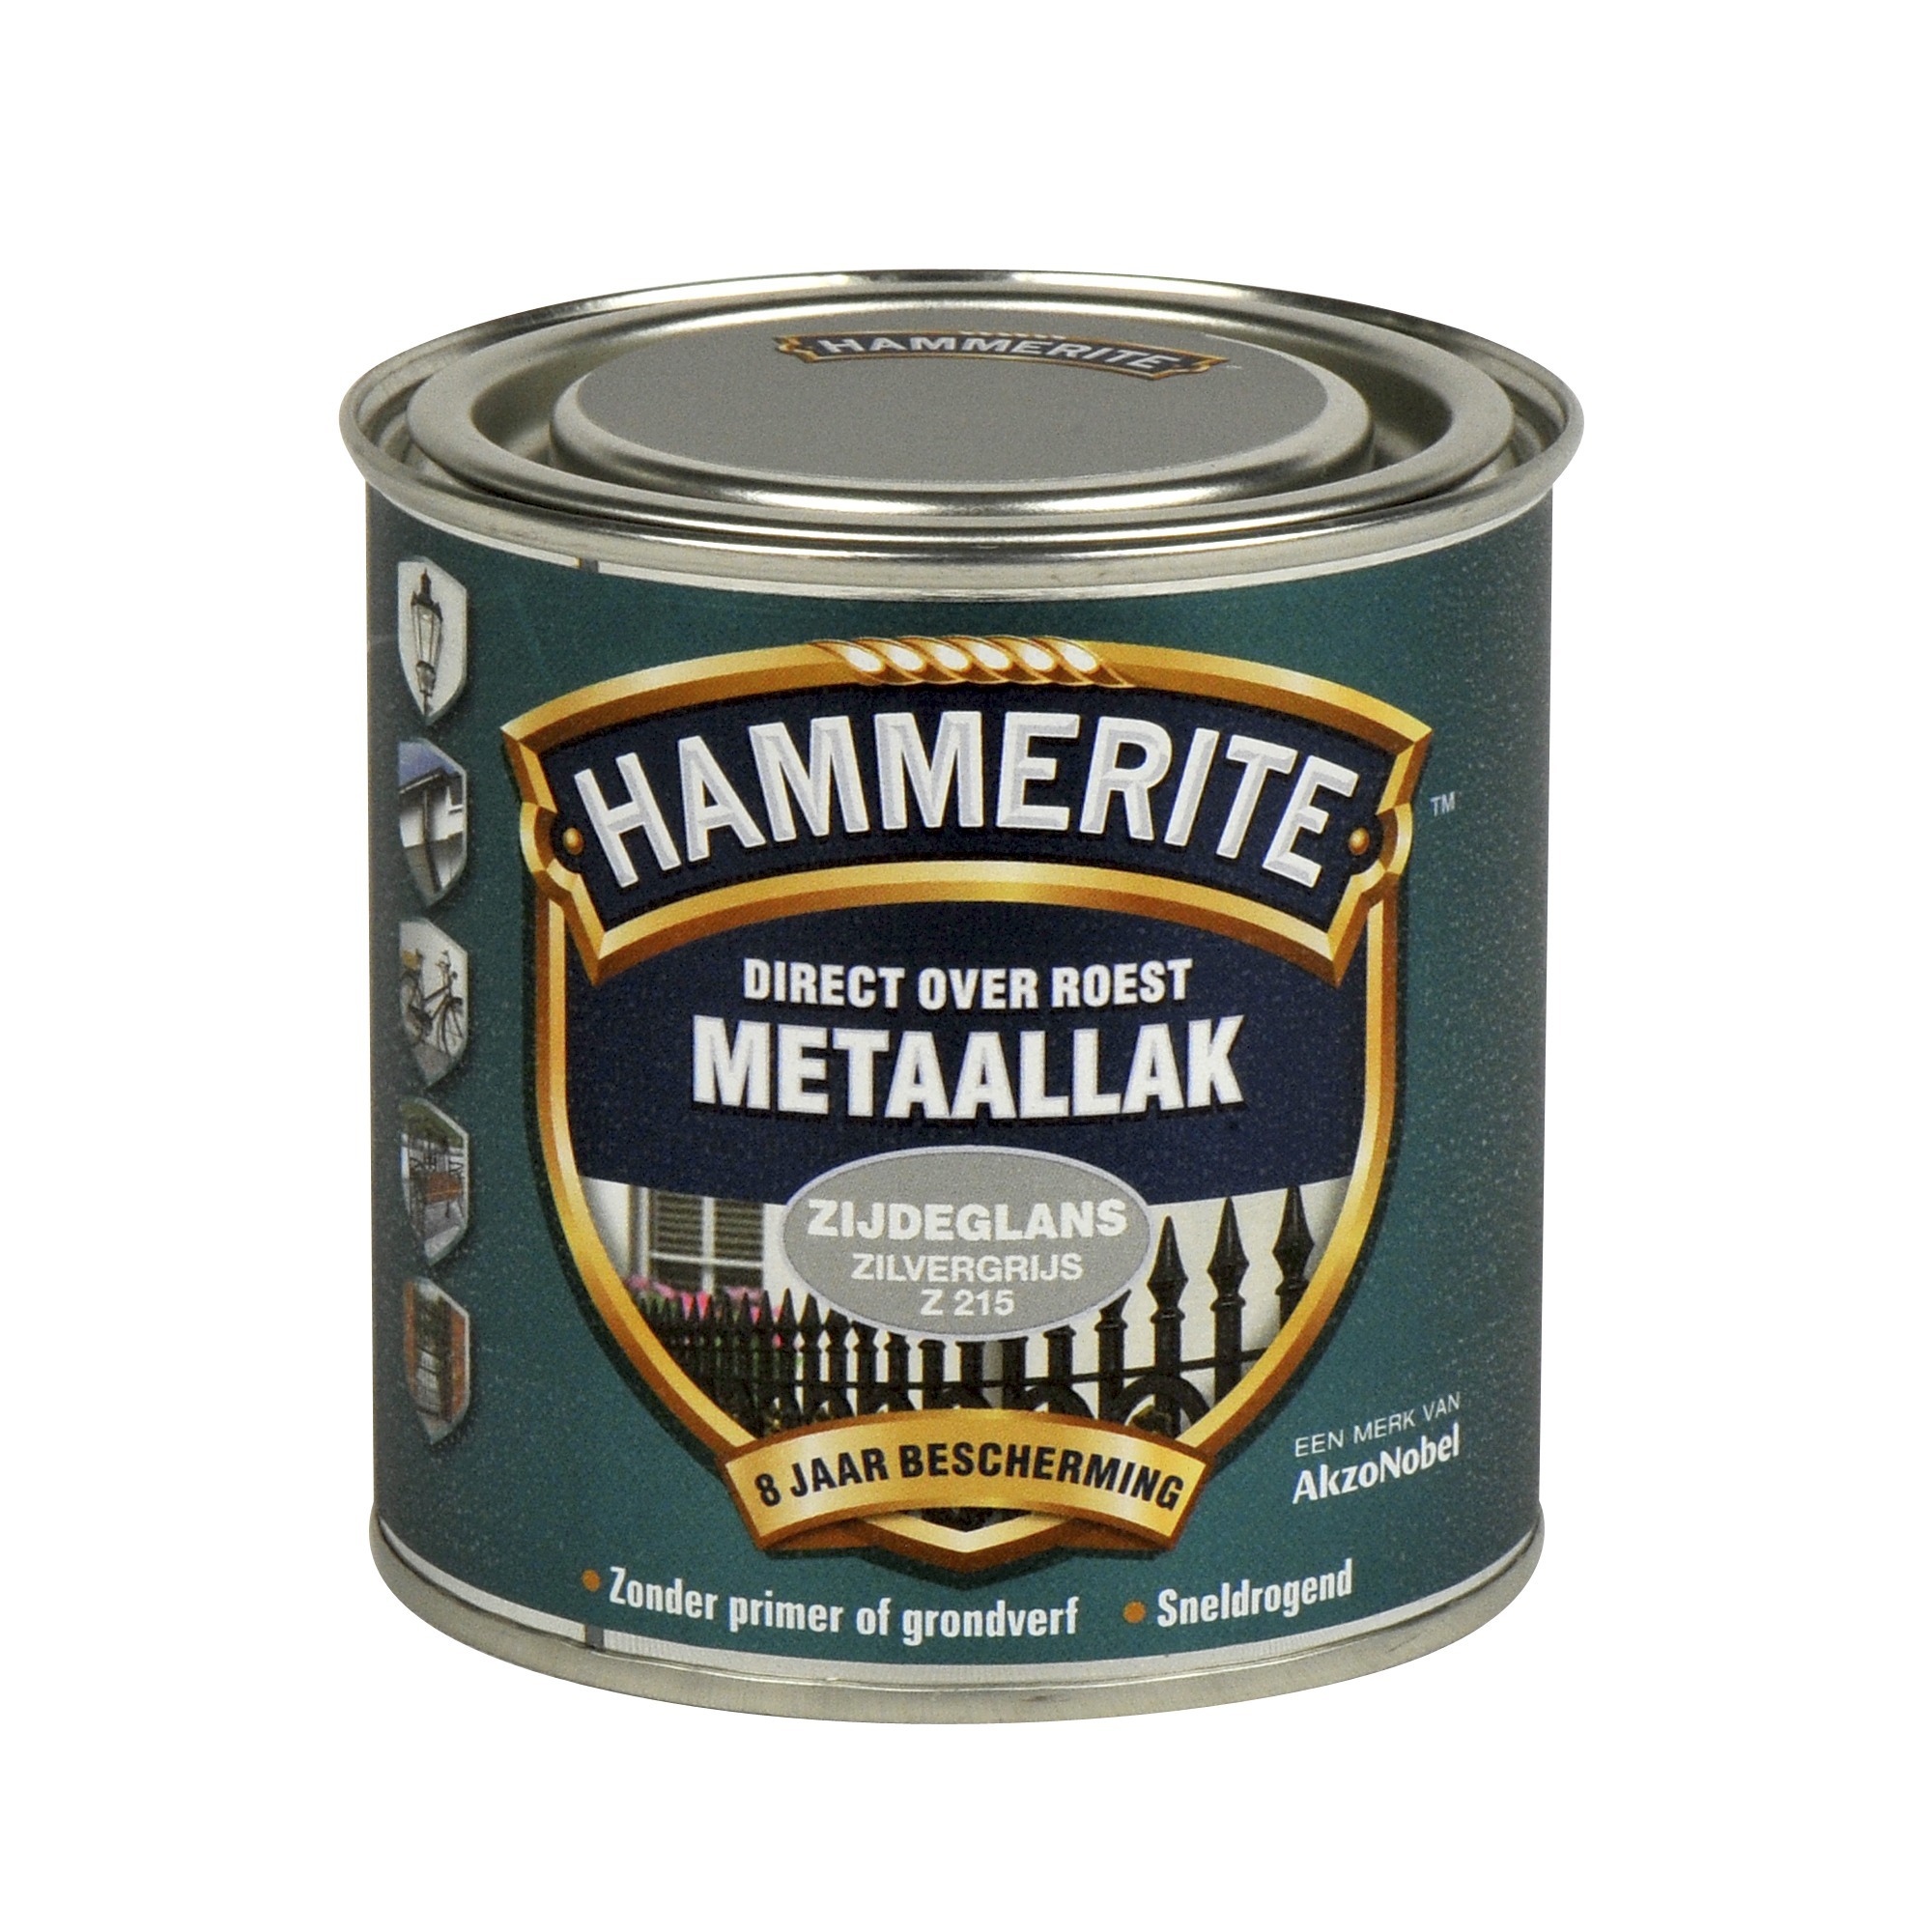 Hammerite direct over roest metaallak zijdeglans zilvergrijs - 250 ml